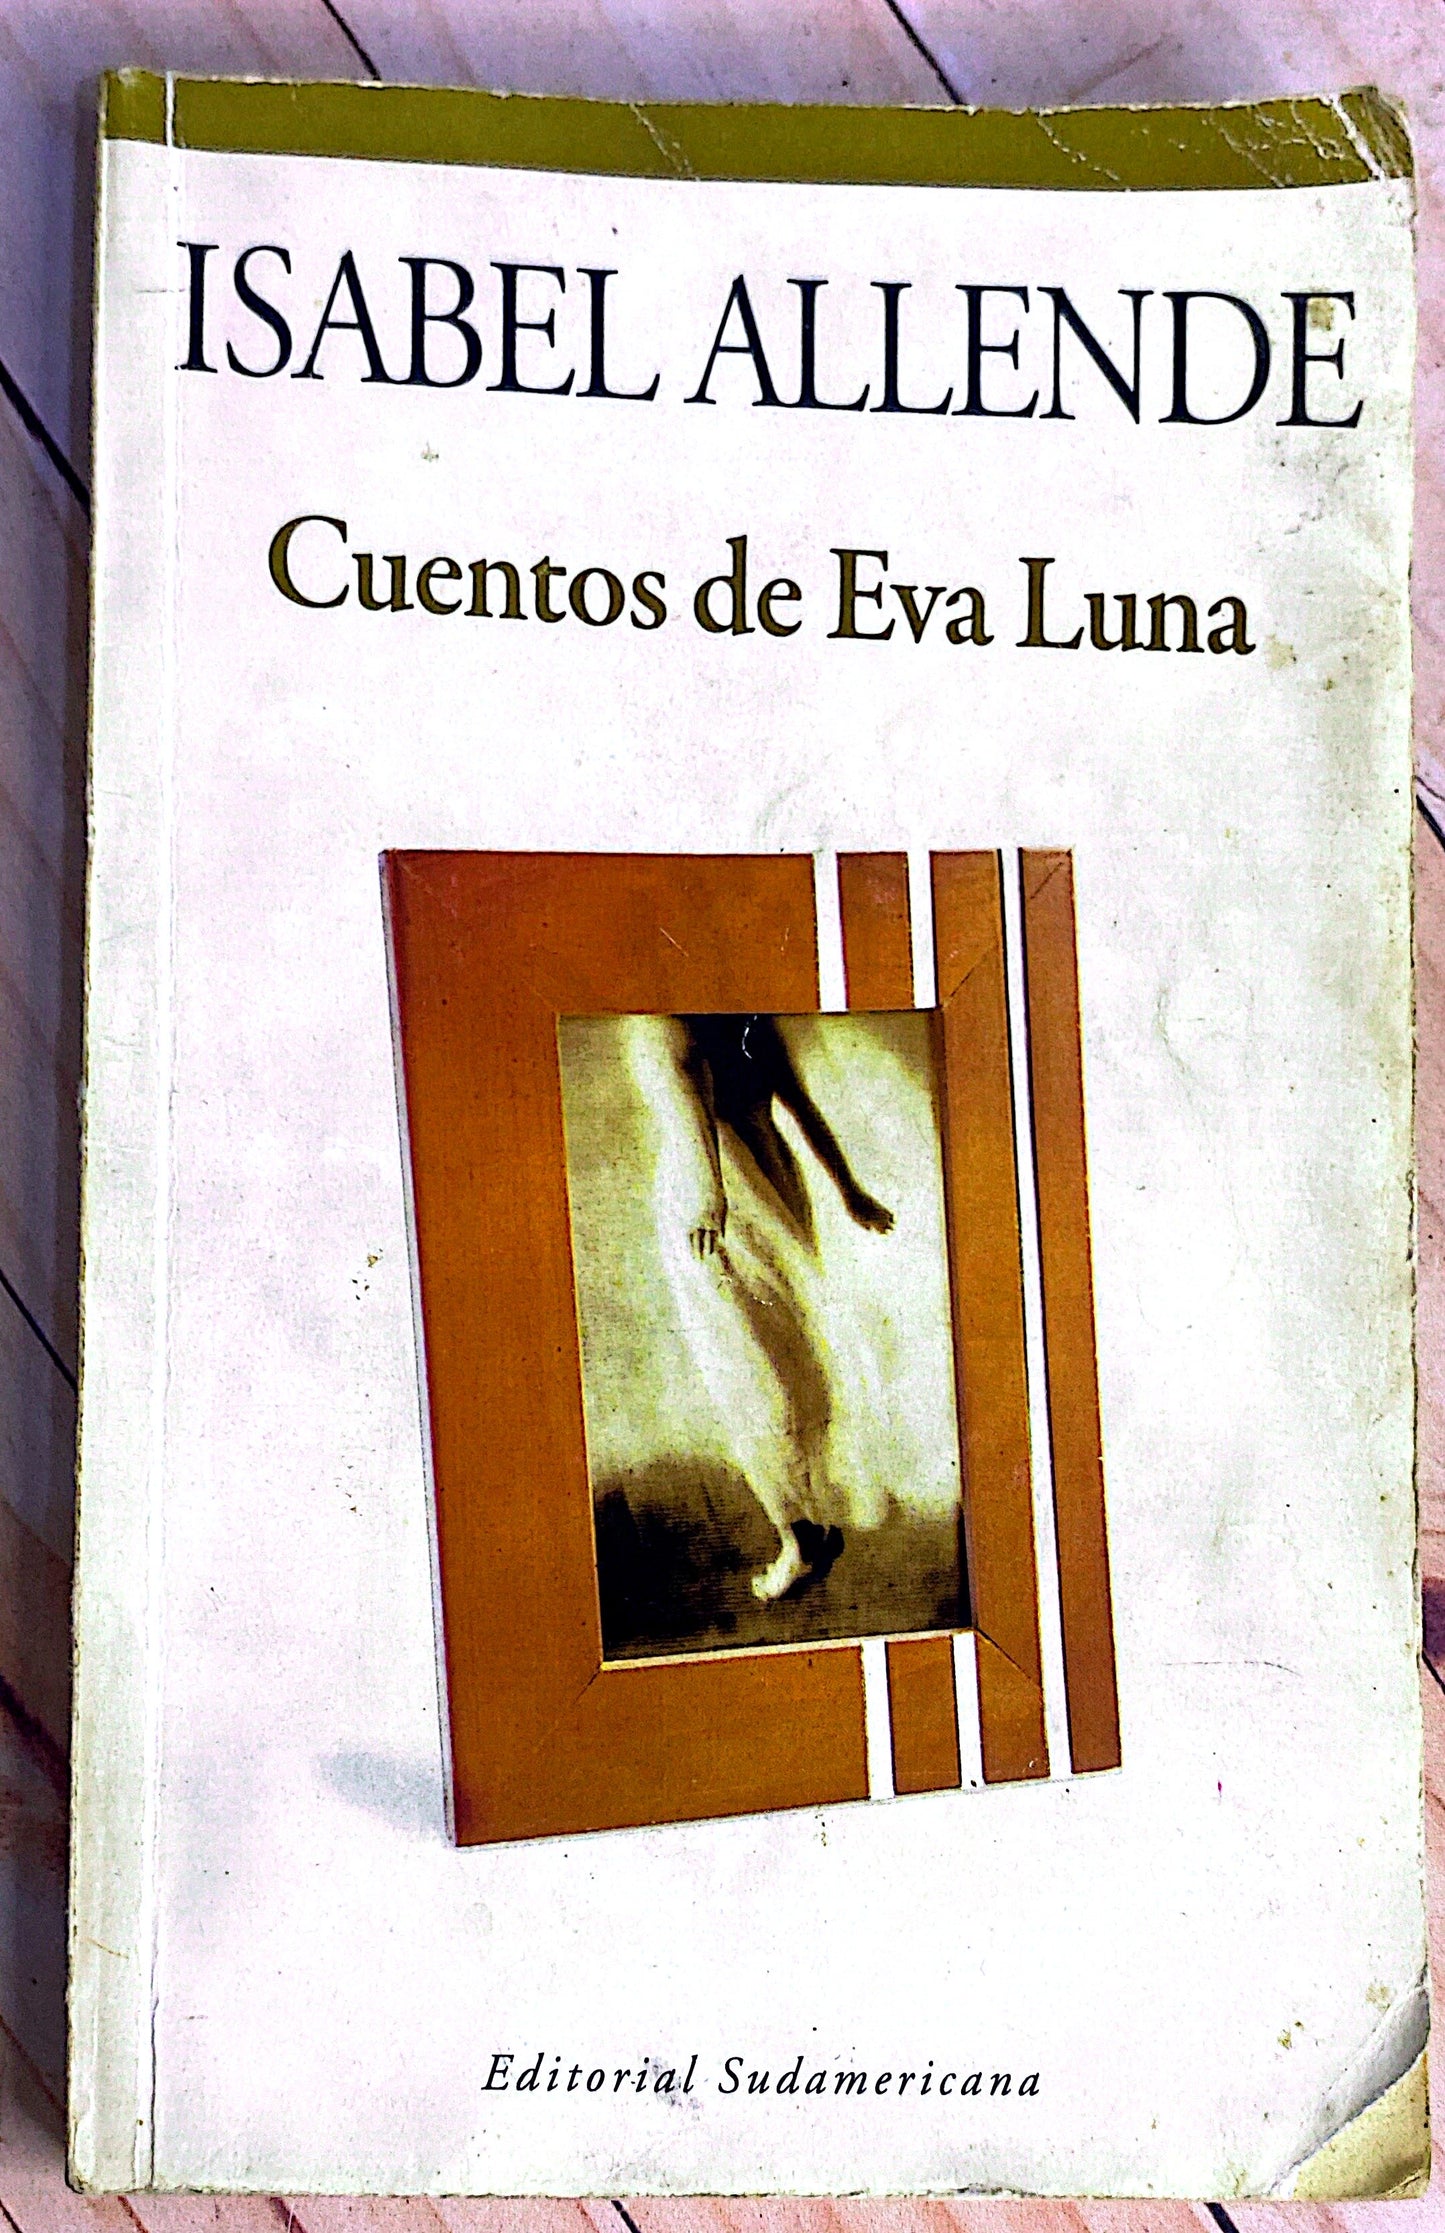 Cuentos de Eva luna | Isabel Allende